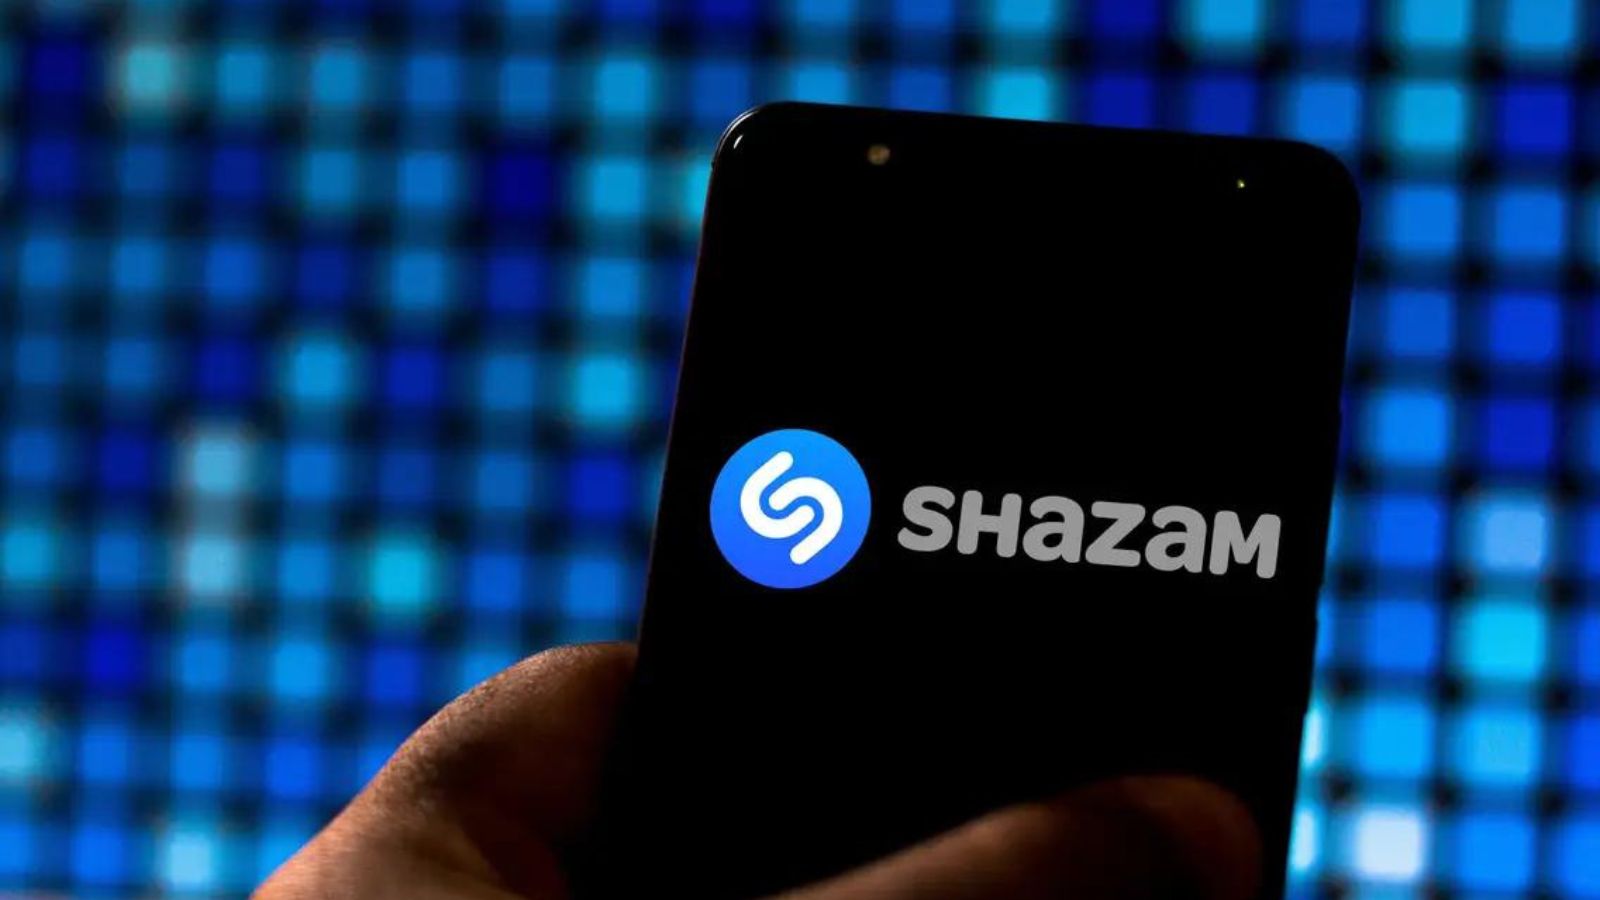 Shazam si aggiorna, riconosce le canzoni su YouTube, Instagram e TikTok